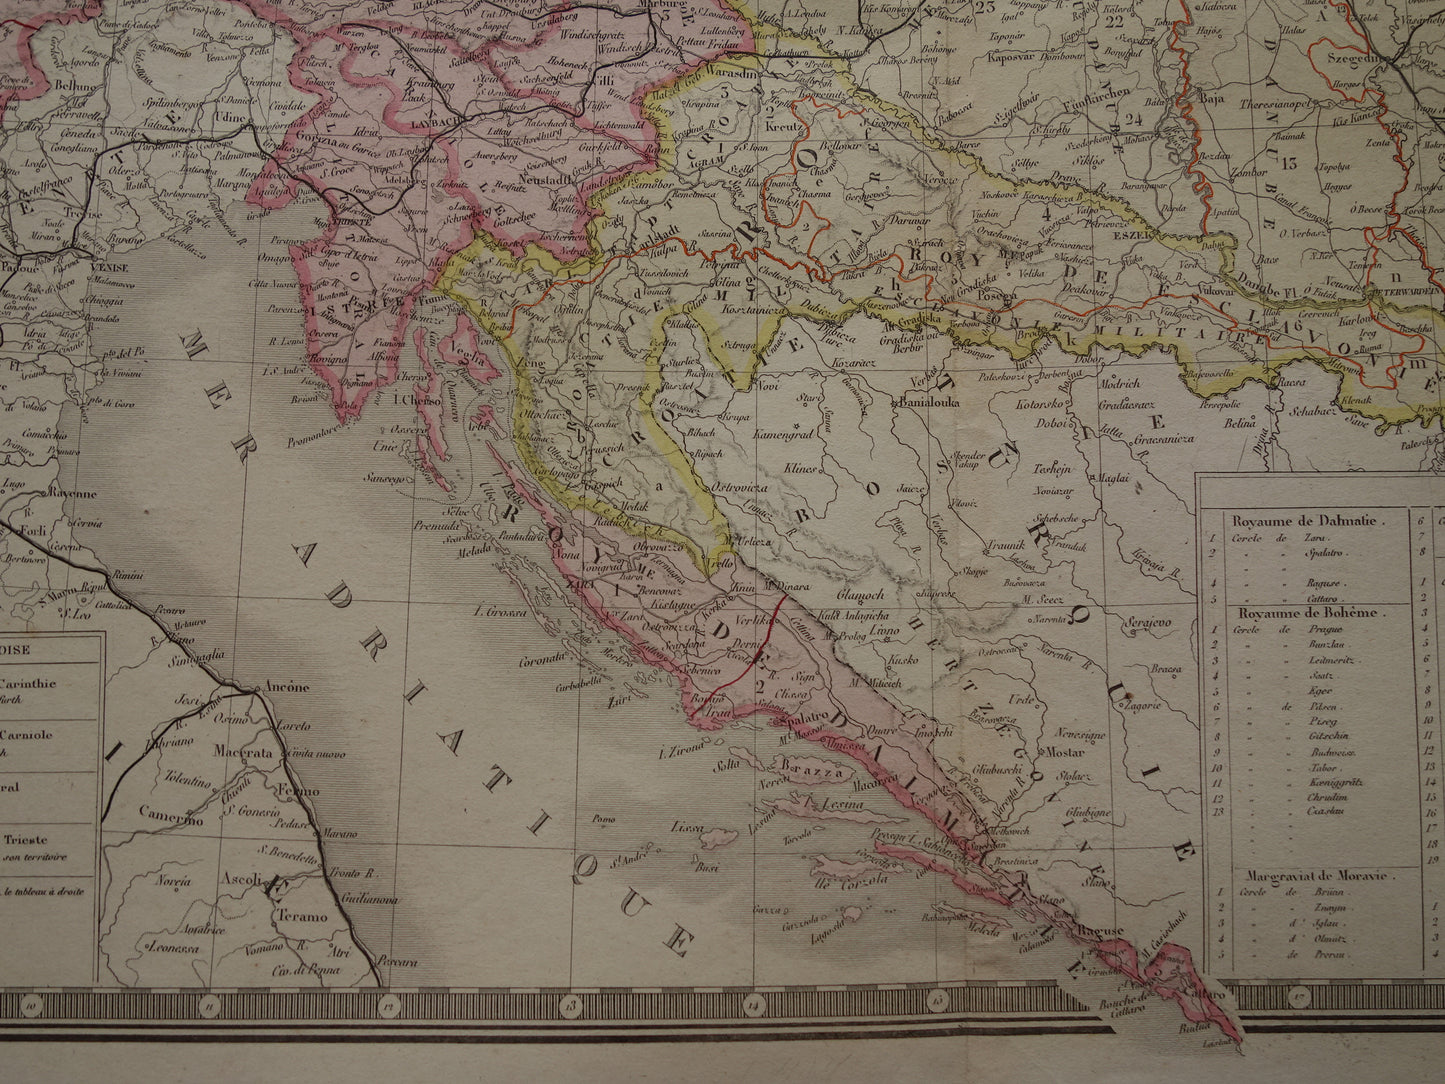 OOSTENRIJK-HONGARIJE Oude kaart van het Oostenrijks-Hongaarse Rijk uit 1876 originele grote antieke handgekleurde landkaart Tsjechië Kroatië Slovenië